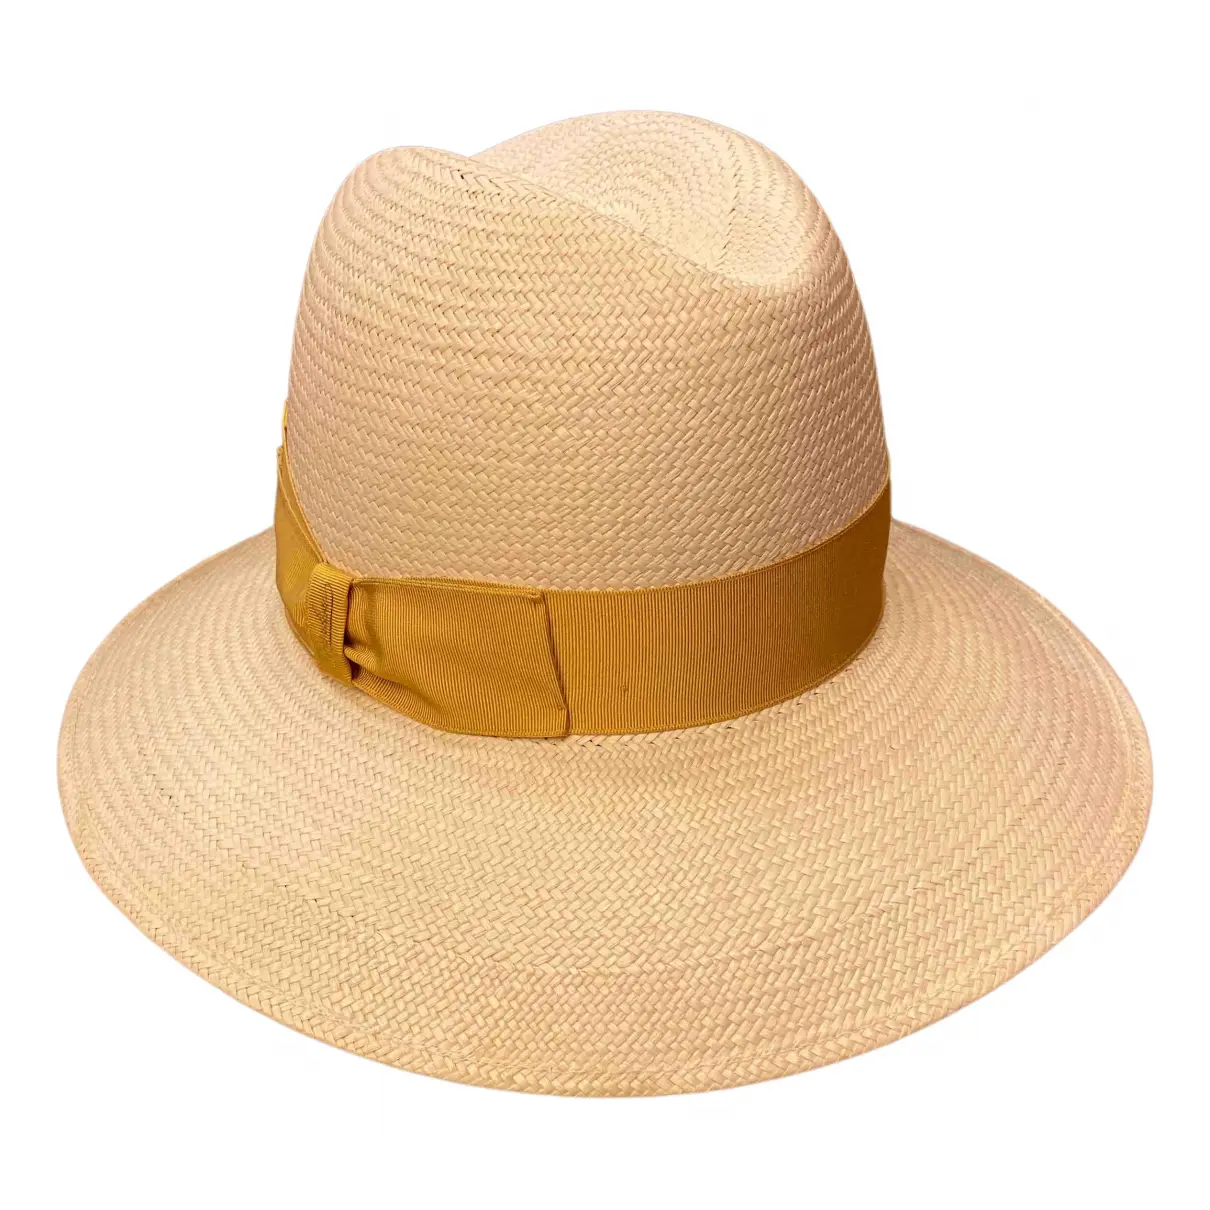 White Wicker Hat Borsalino